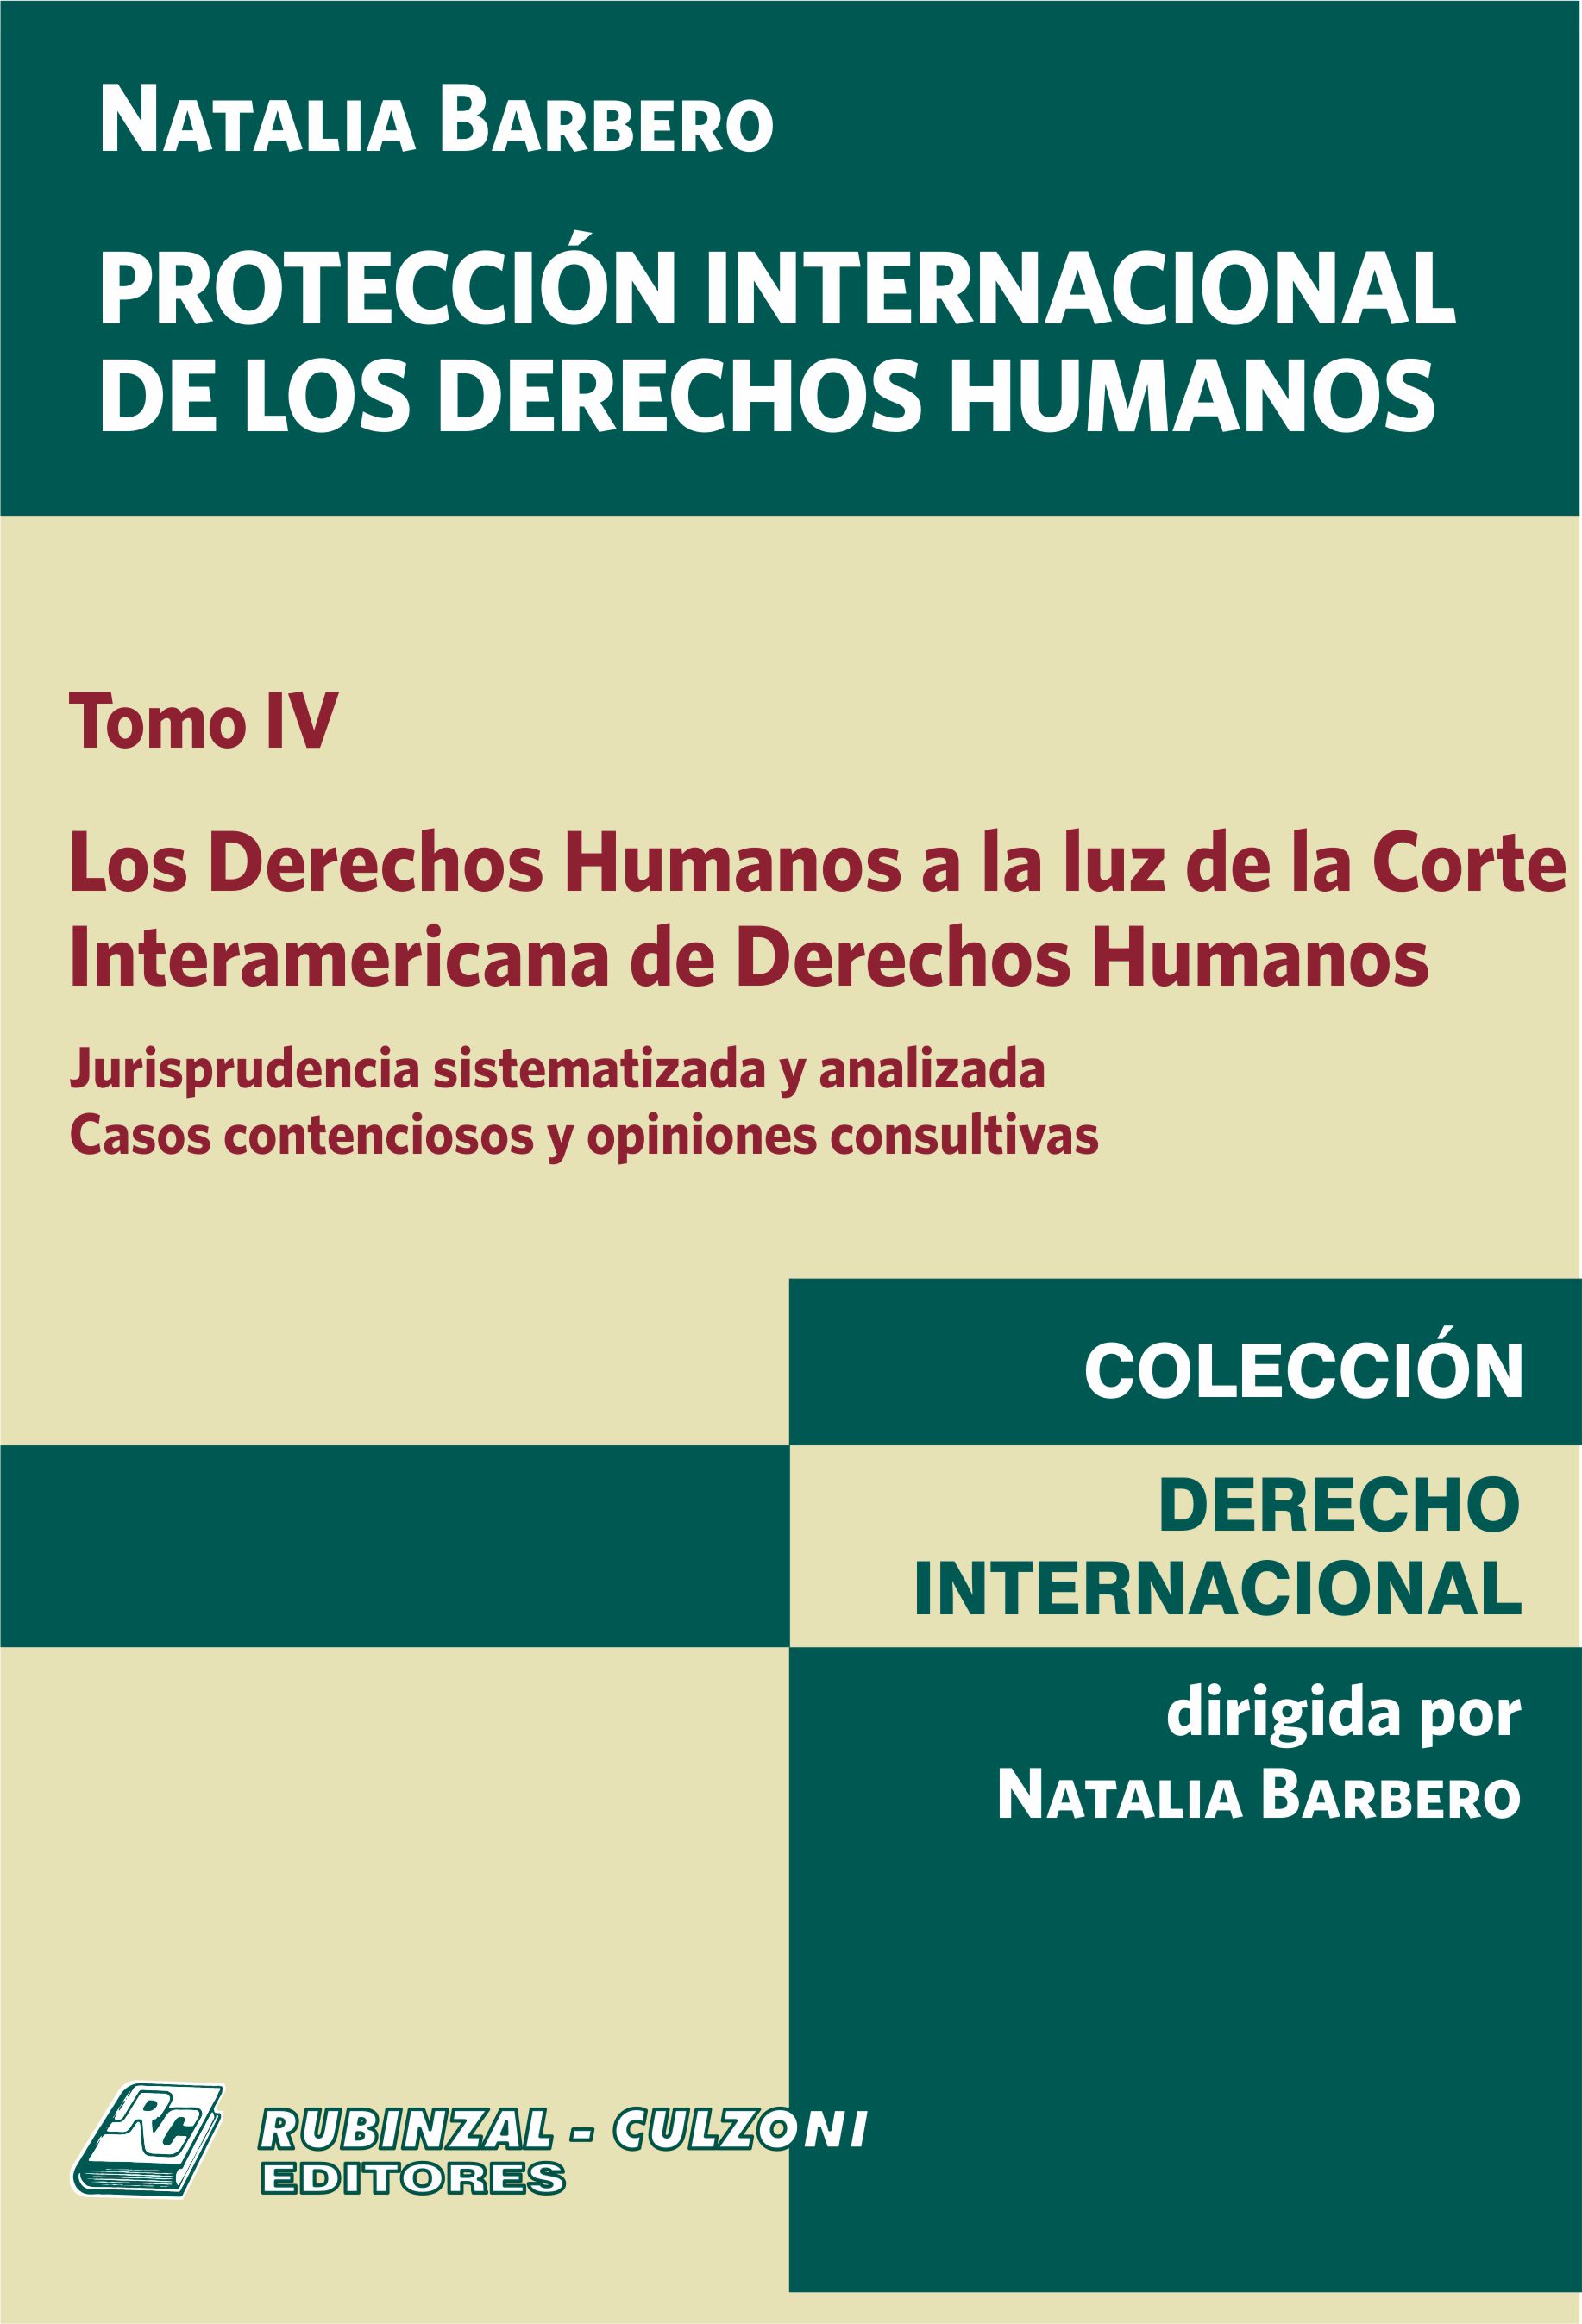 Protección Internacional de los Derechos Humanos. - Tomo IV. Los Derechos Humanos a la luz de la Corte Interamericana de Derechos Humanos.